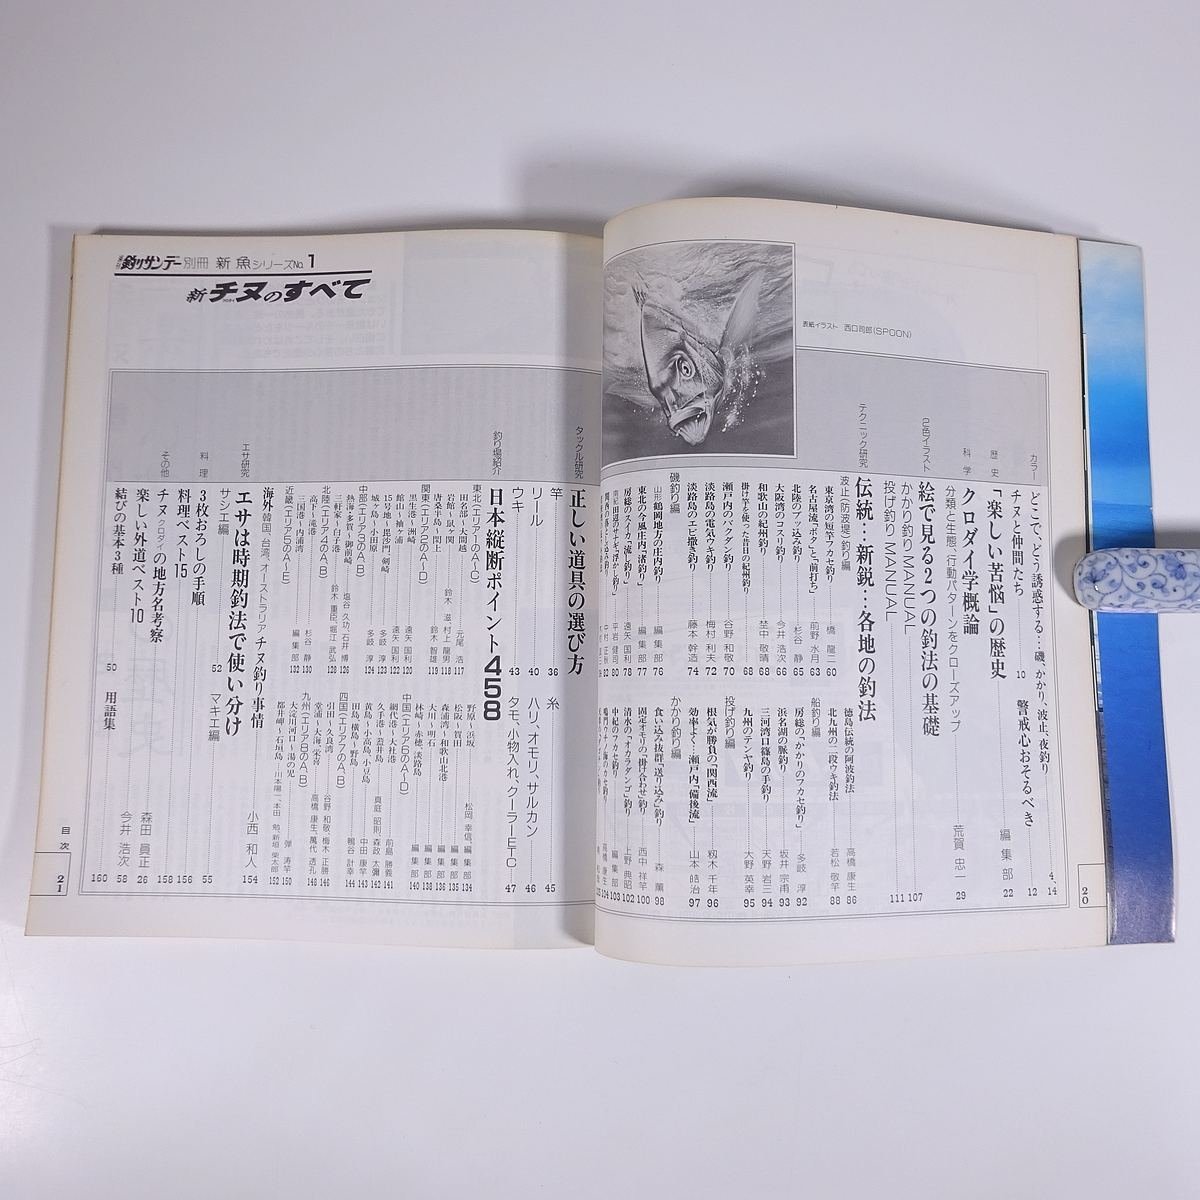 新 チヌ クロダイのすべて 新魚シリーズ1 週刊釣りサンデー別冊 1987 大型本 つり 釣り フィッシング_画像7